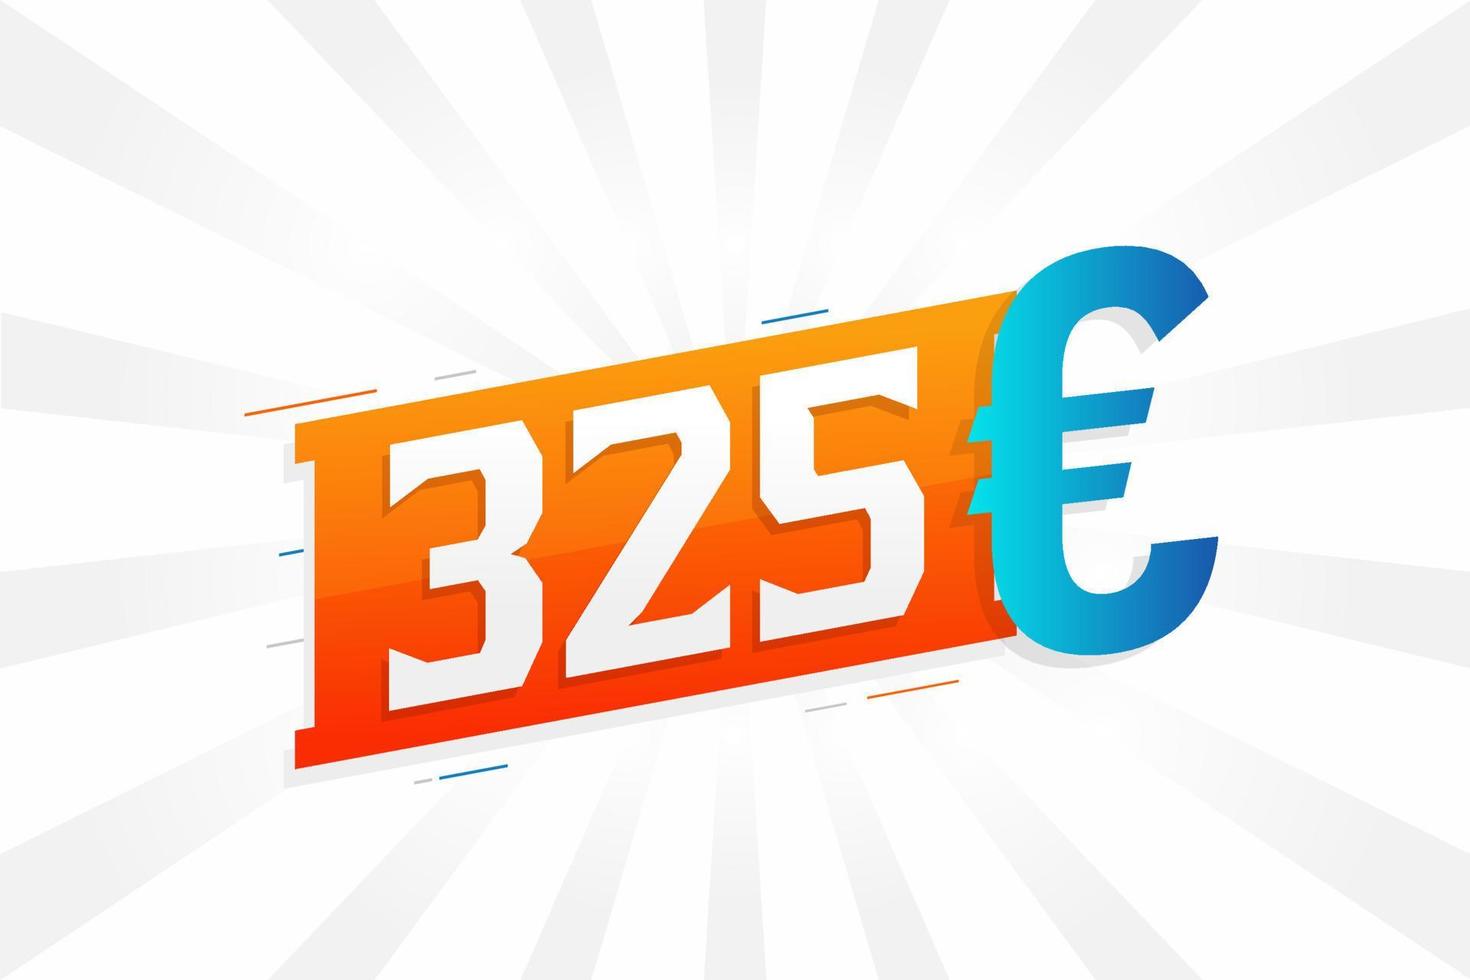 Symbole de texte vectoriel de devise 325 euros. 325 euros vecteur de stock d'argent de l'union européenne